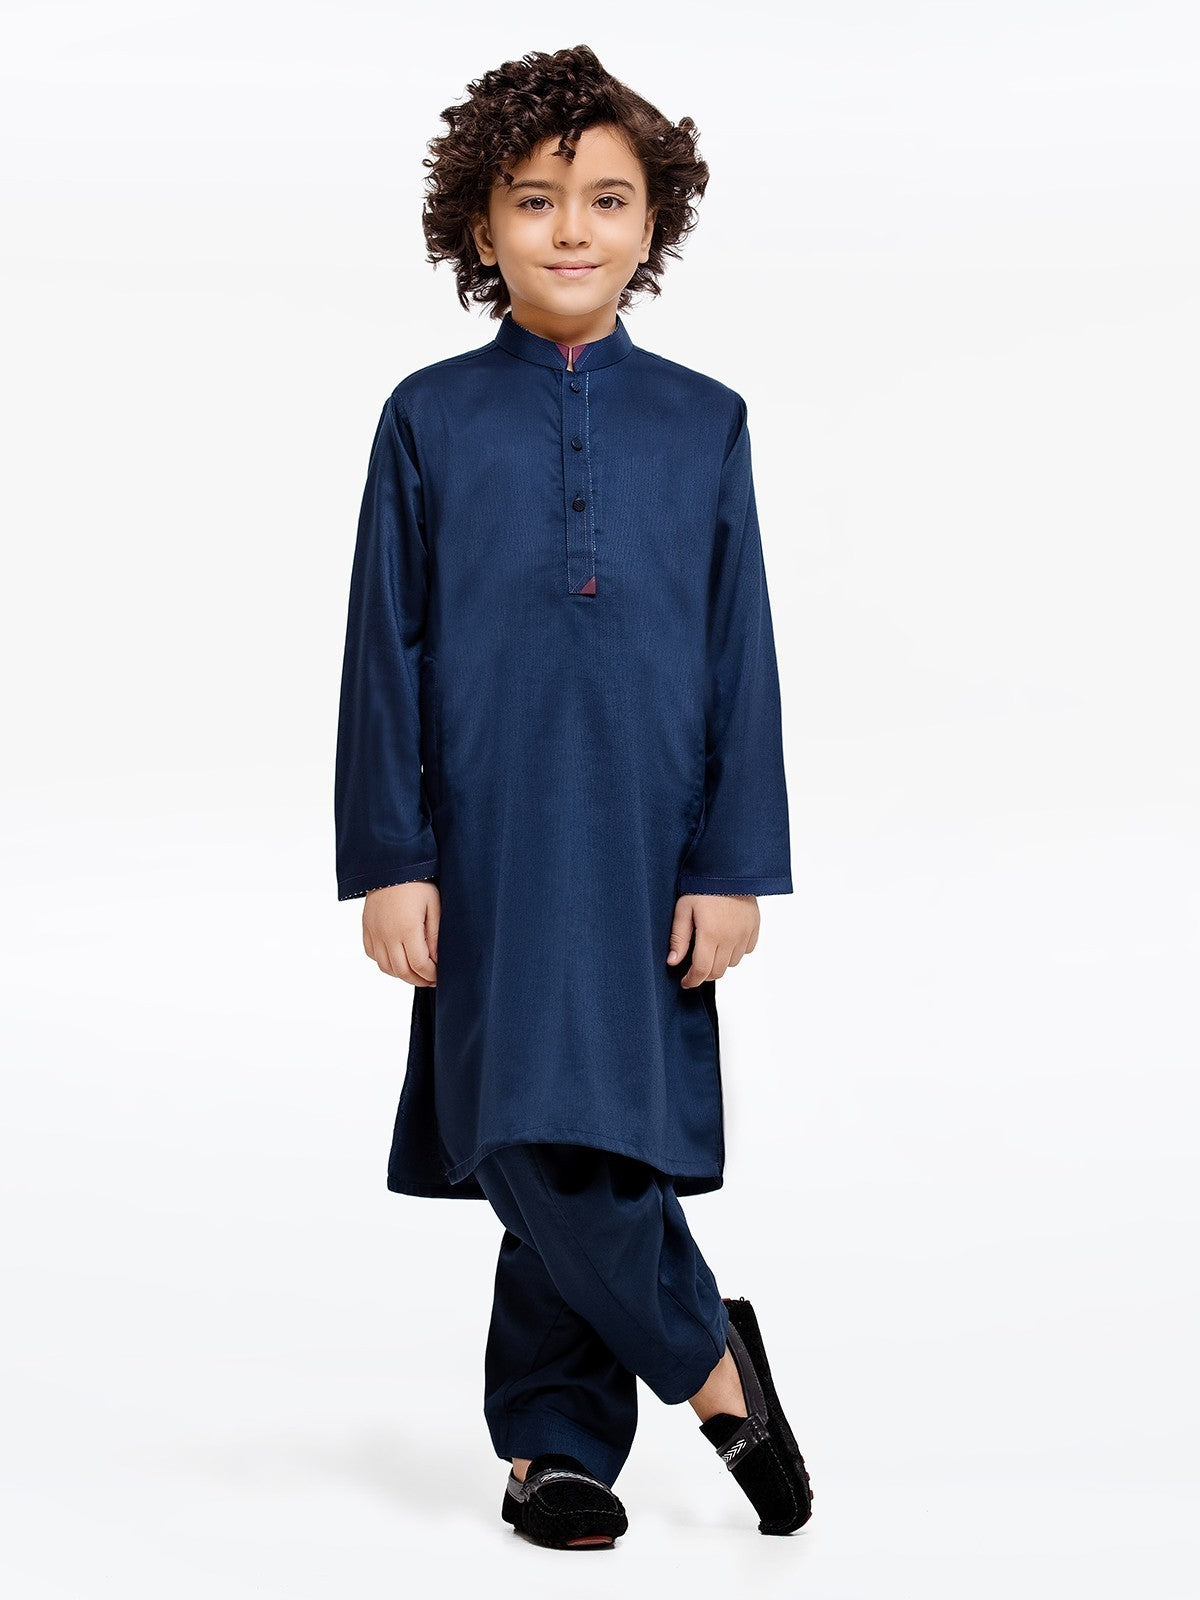 Boy's Navy Blue Kurta Shalwar - EBTKS23-3905